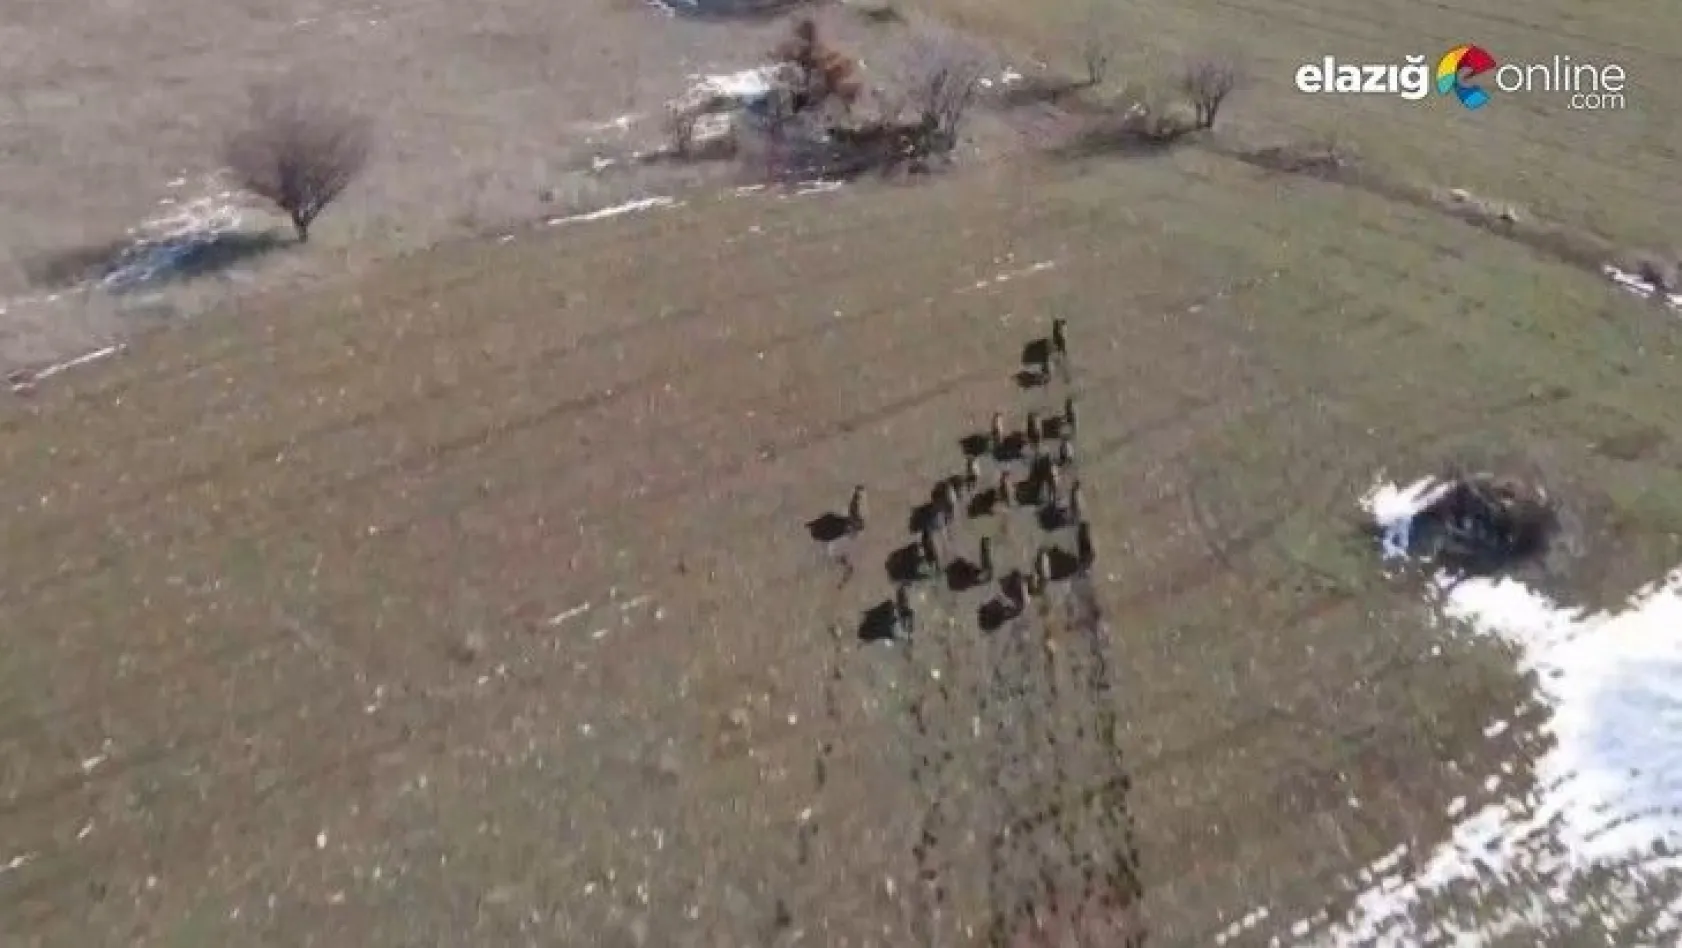 Elazığ'da domuz sürüsü drone ile görüntülendi